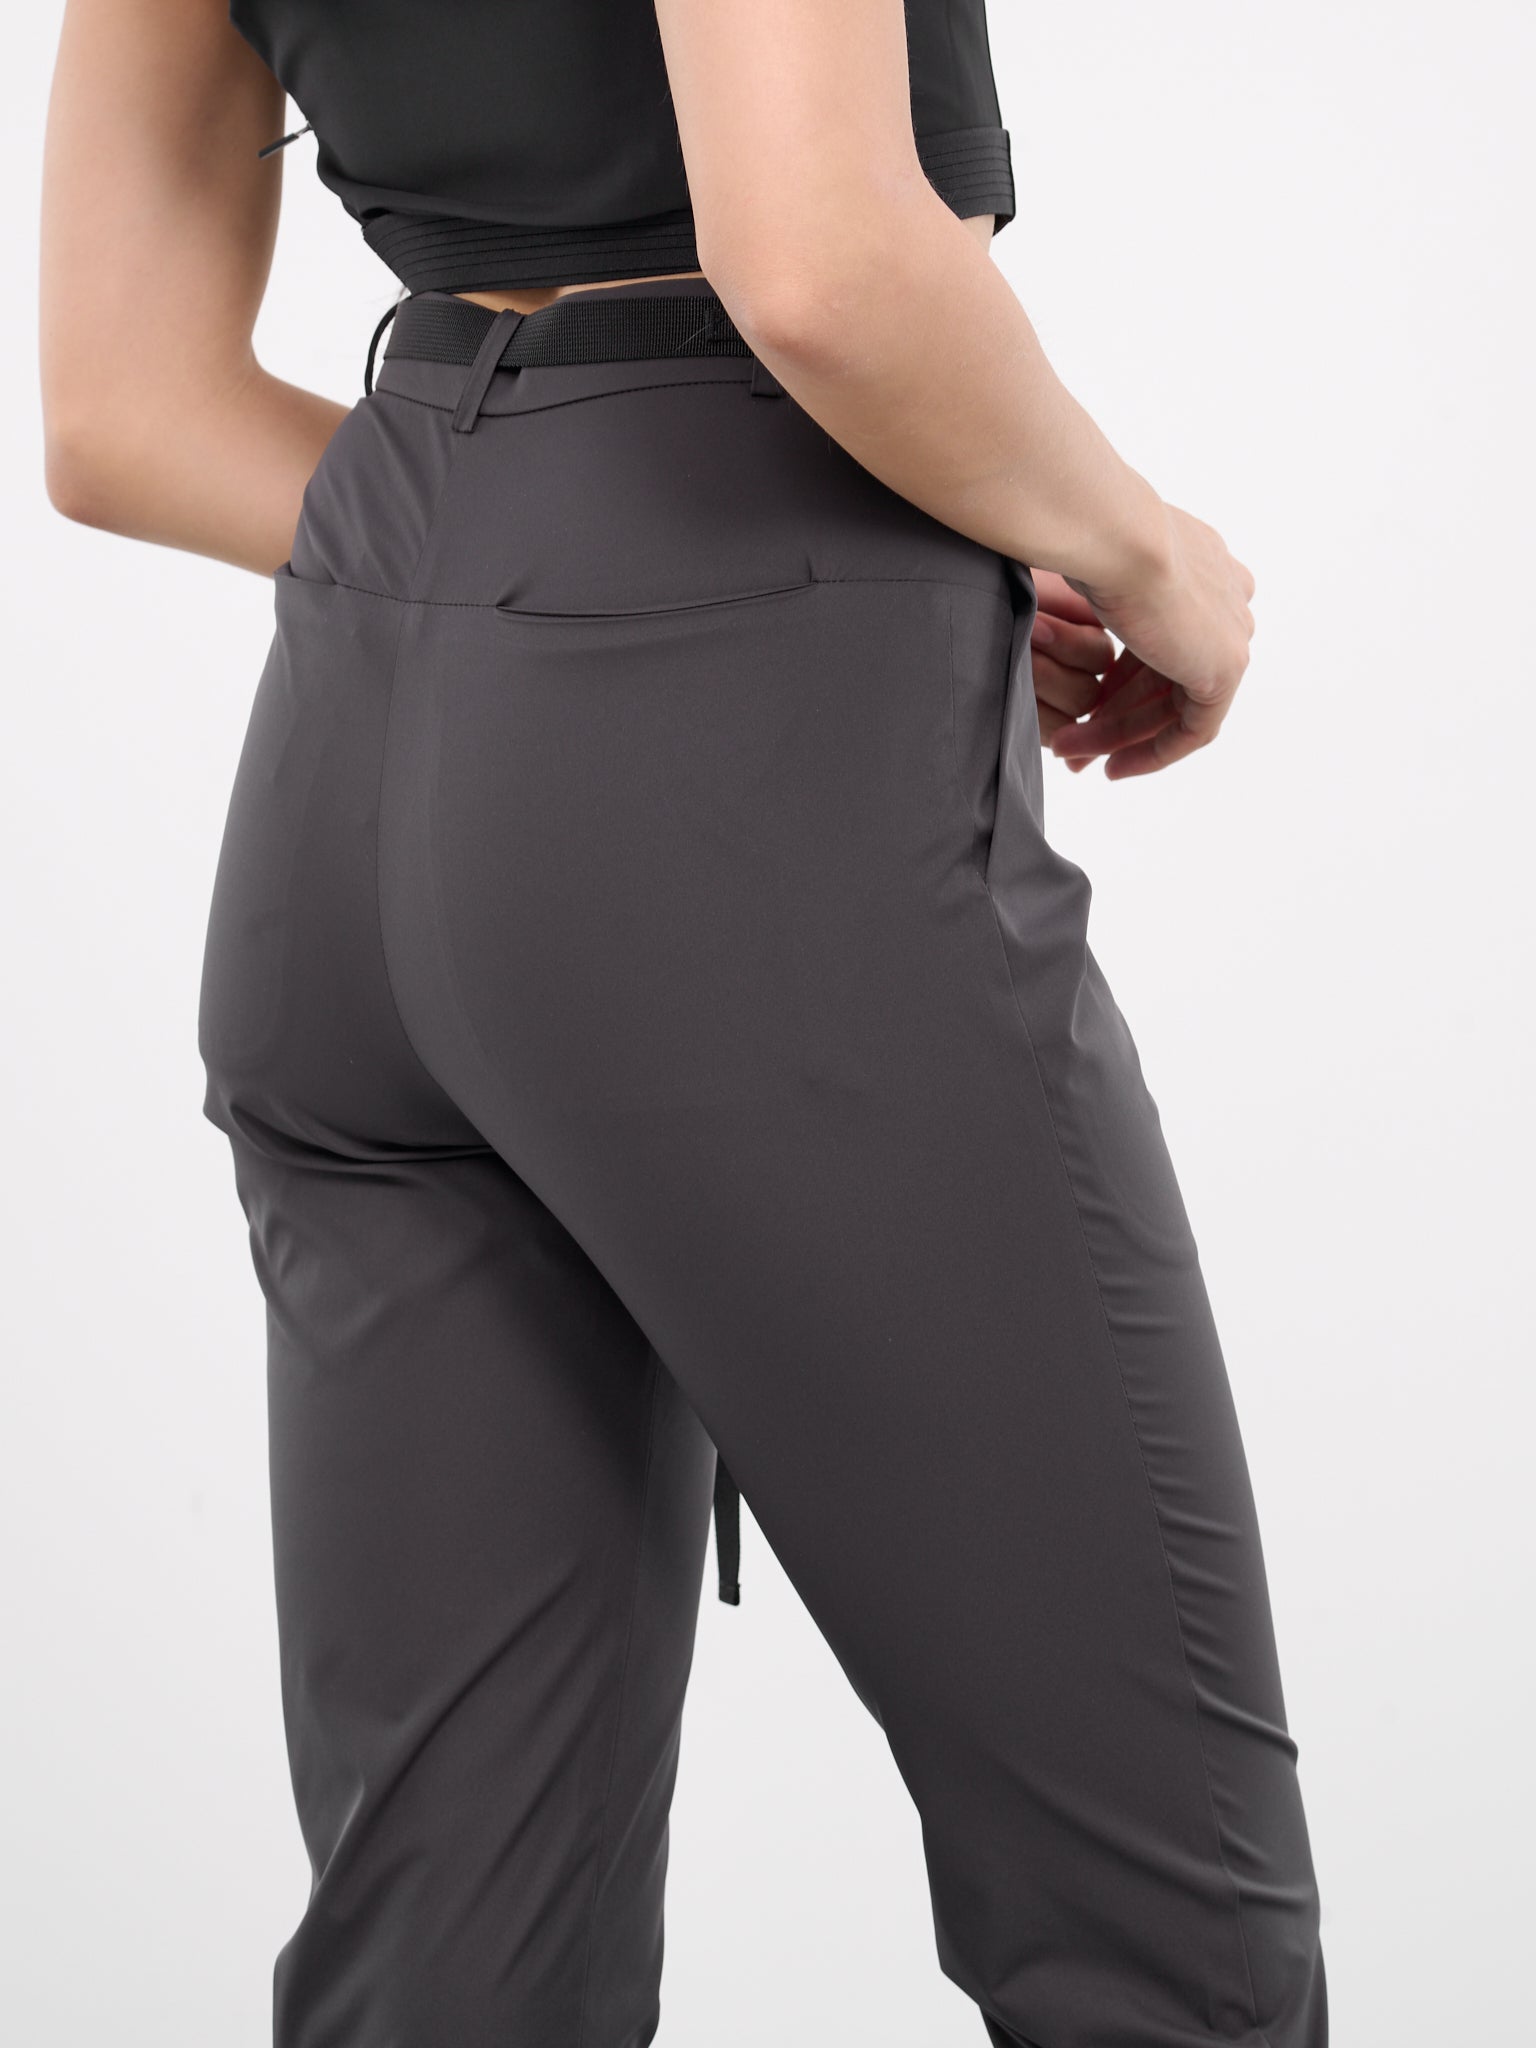 Belted Slim Pants (PT2DG-DARK-GREY)